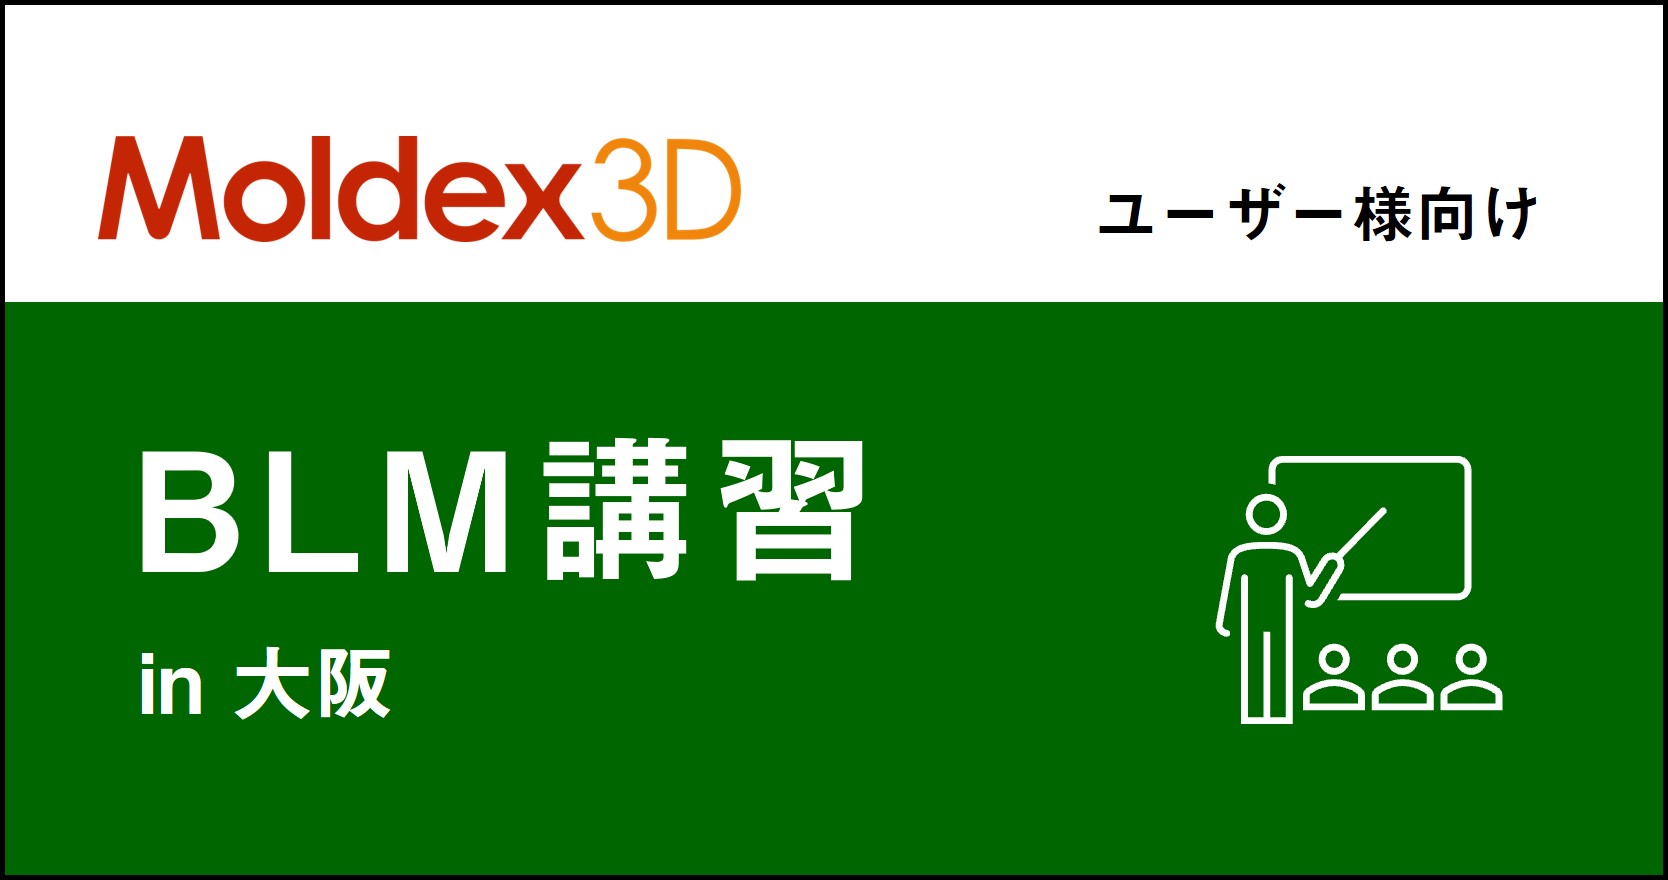 【大阪】1~3月 Moldex3D/ BLM 講習 ※旧「Designer BLM講習」